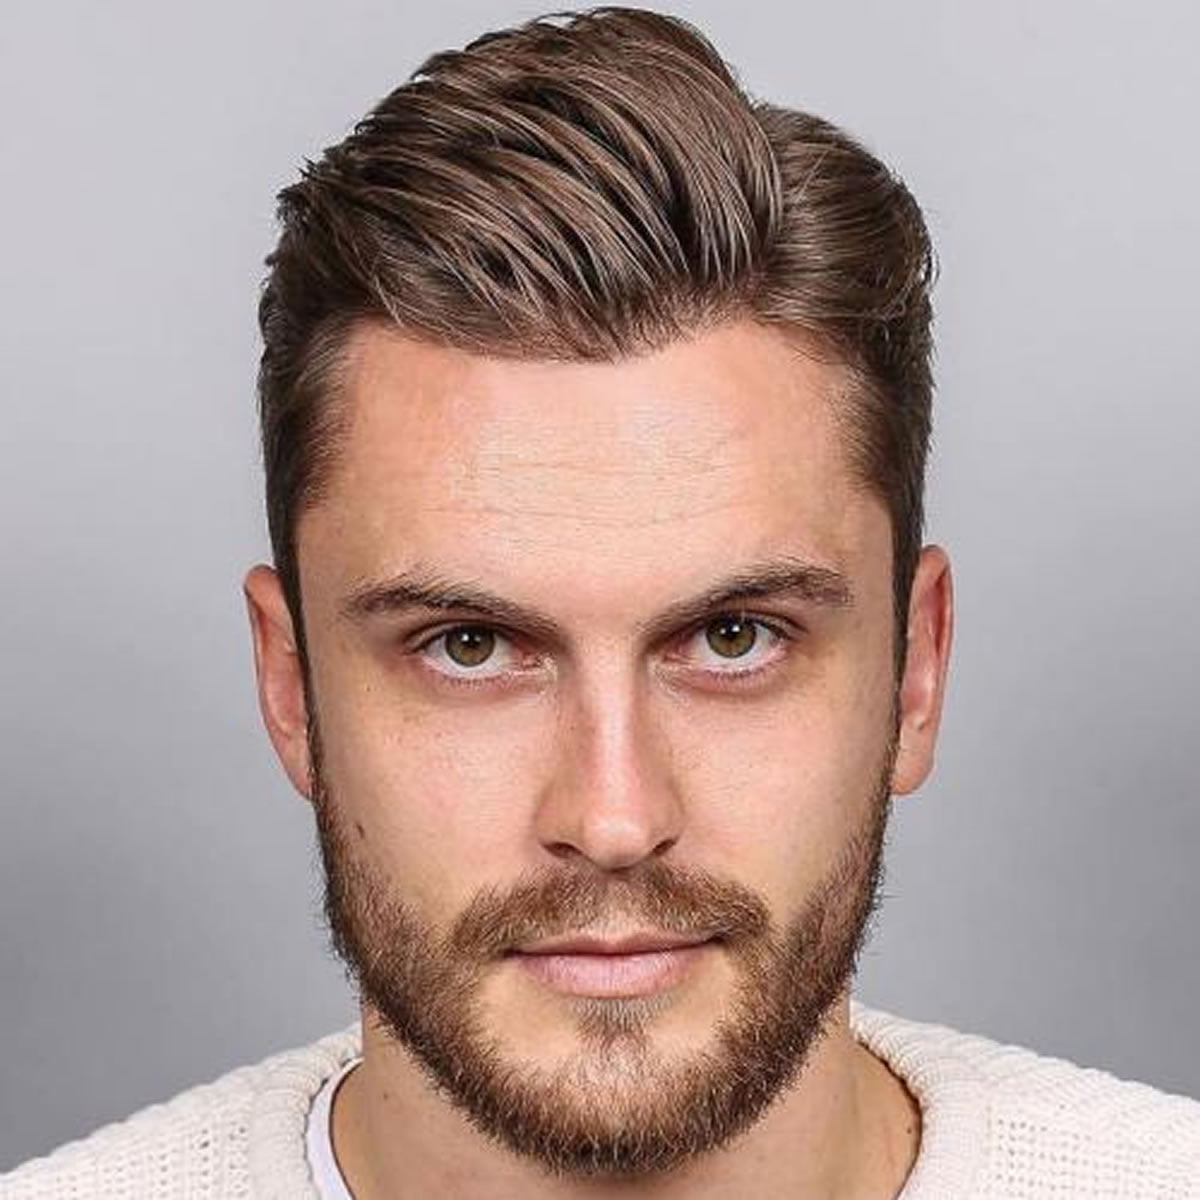 2018 Short Haircuts for Men – 17 Great Short Hair Ideas, Photos | Haircuts